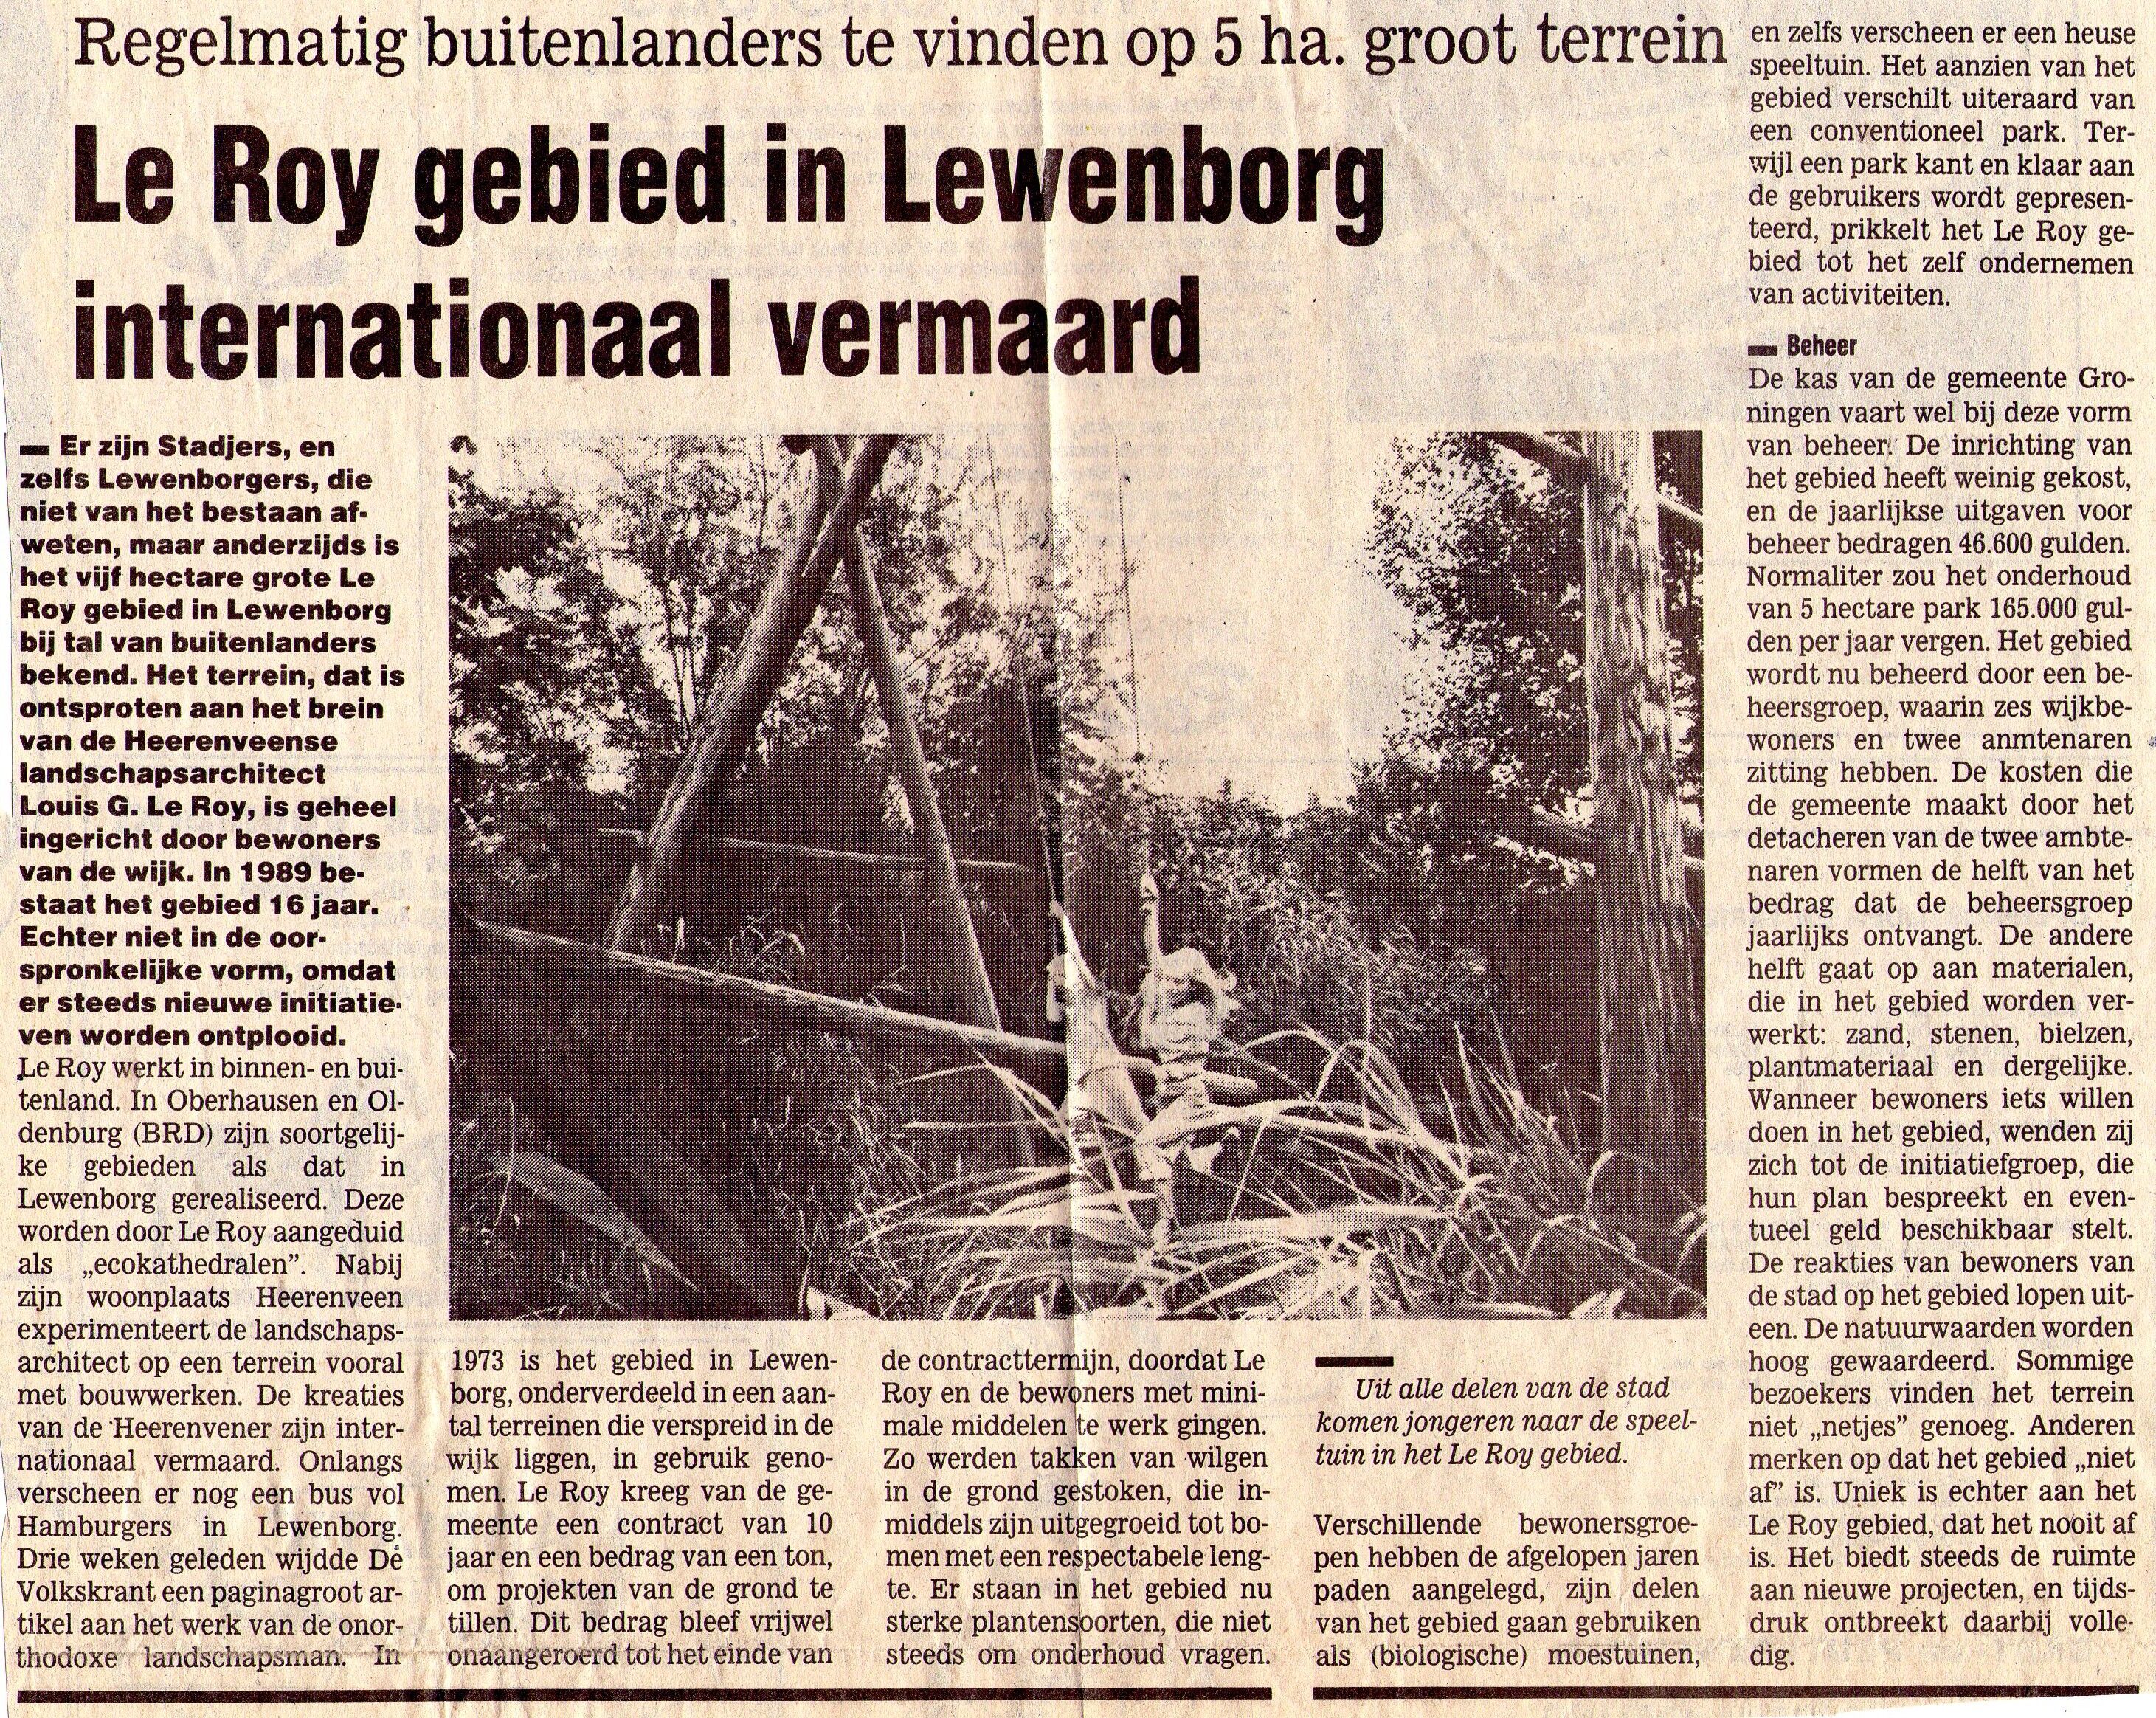 19890809_Le_Roy_gebied_in_Lewenborg_internationaal_vermaard.jpg